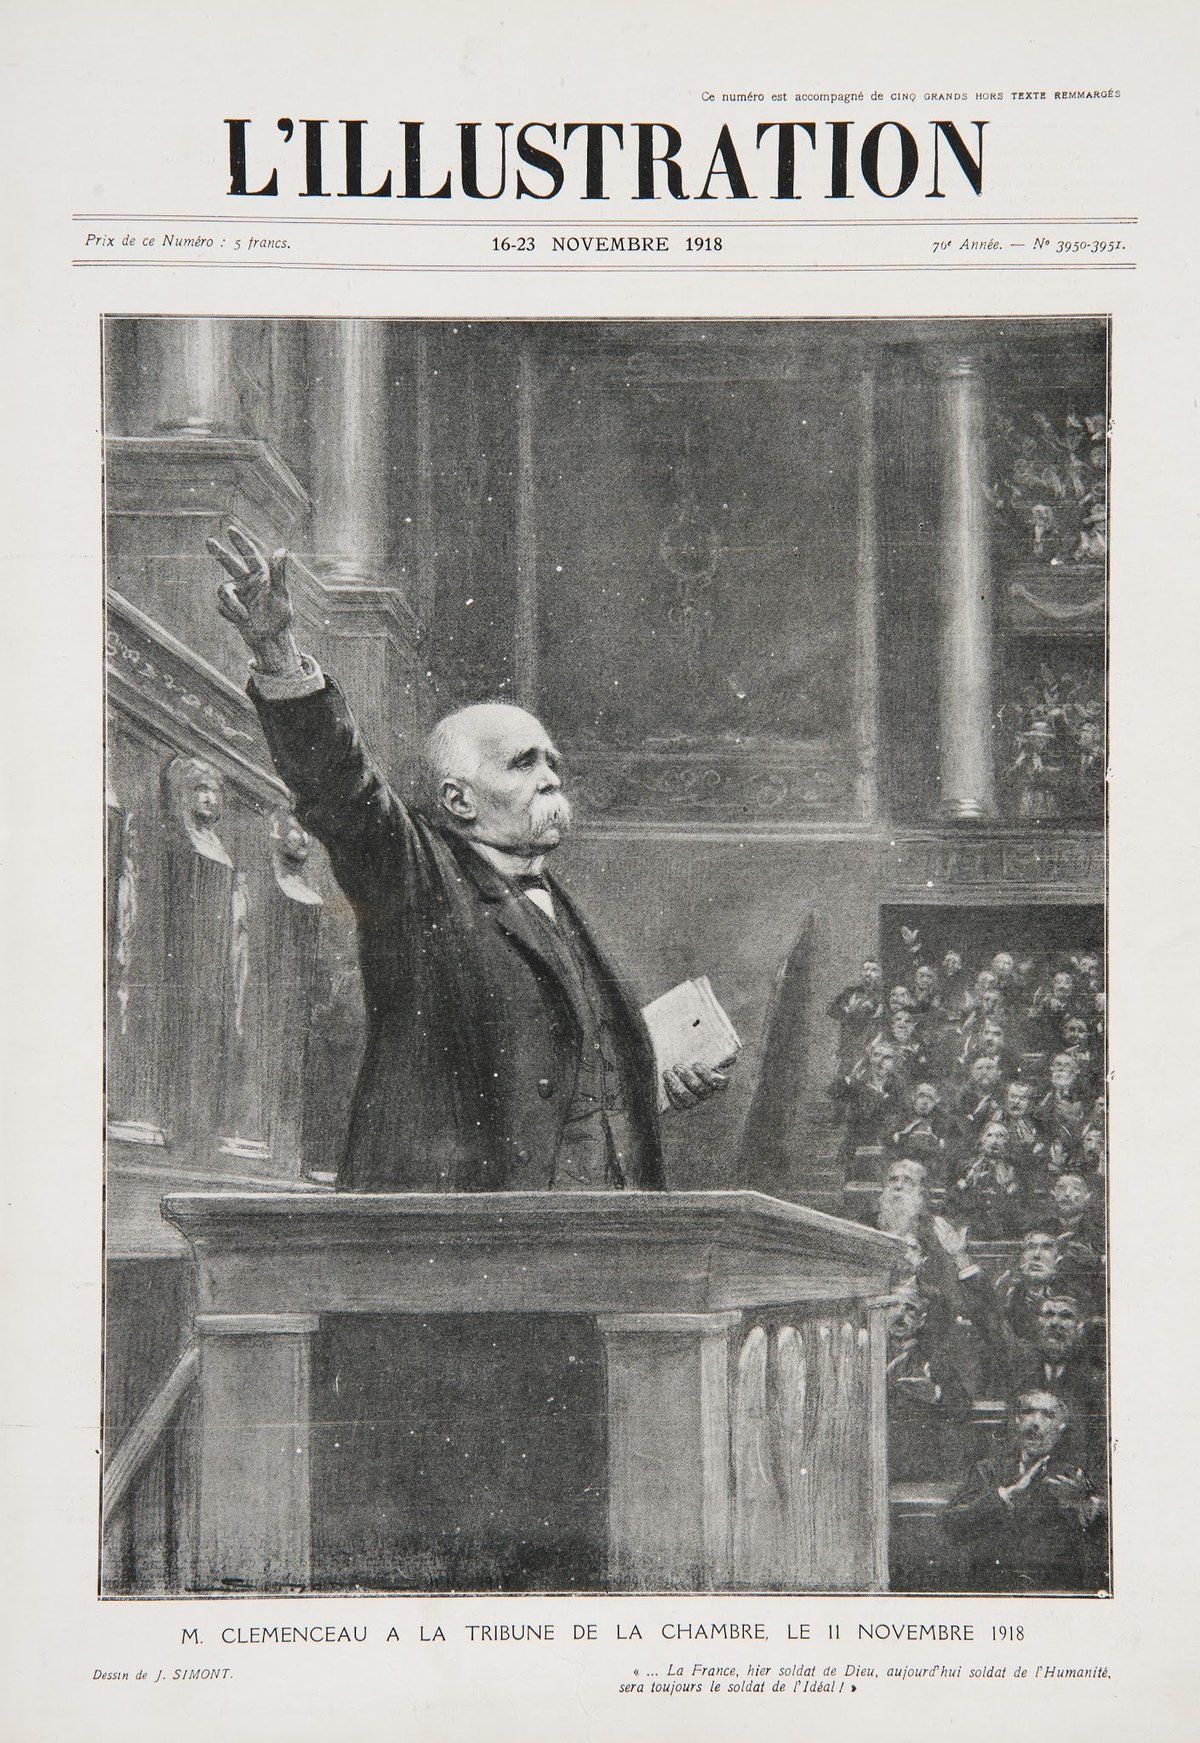 Fichier:L'Illustration - Clemenceau à la tribune le 11 novembre 1918.jpg — Wikipédia